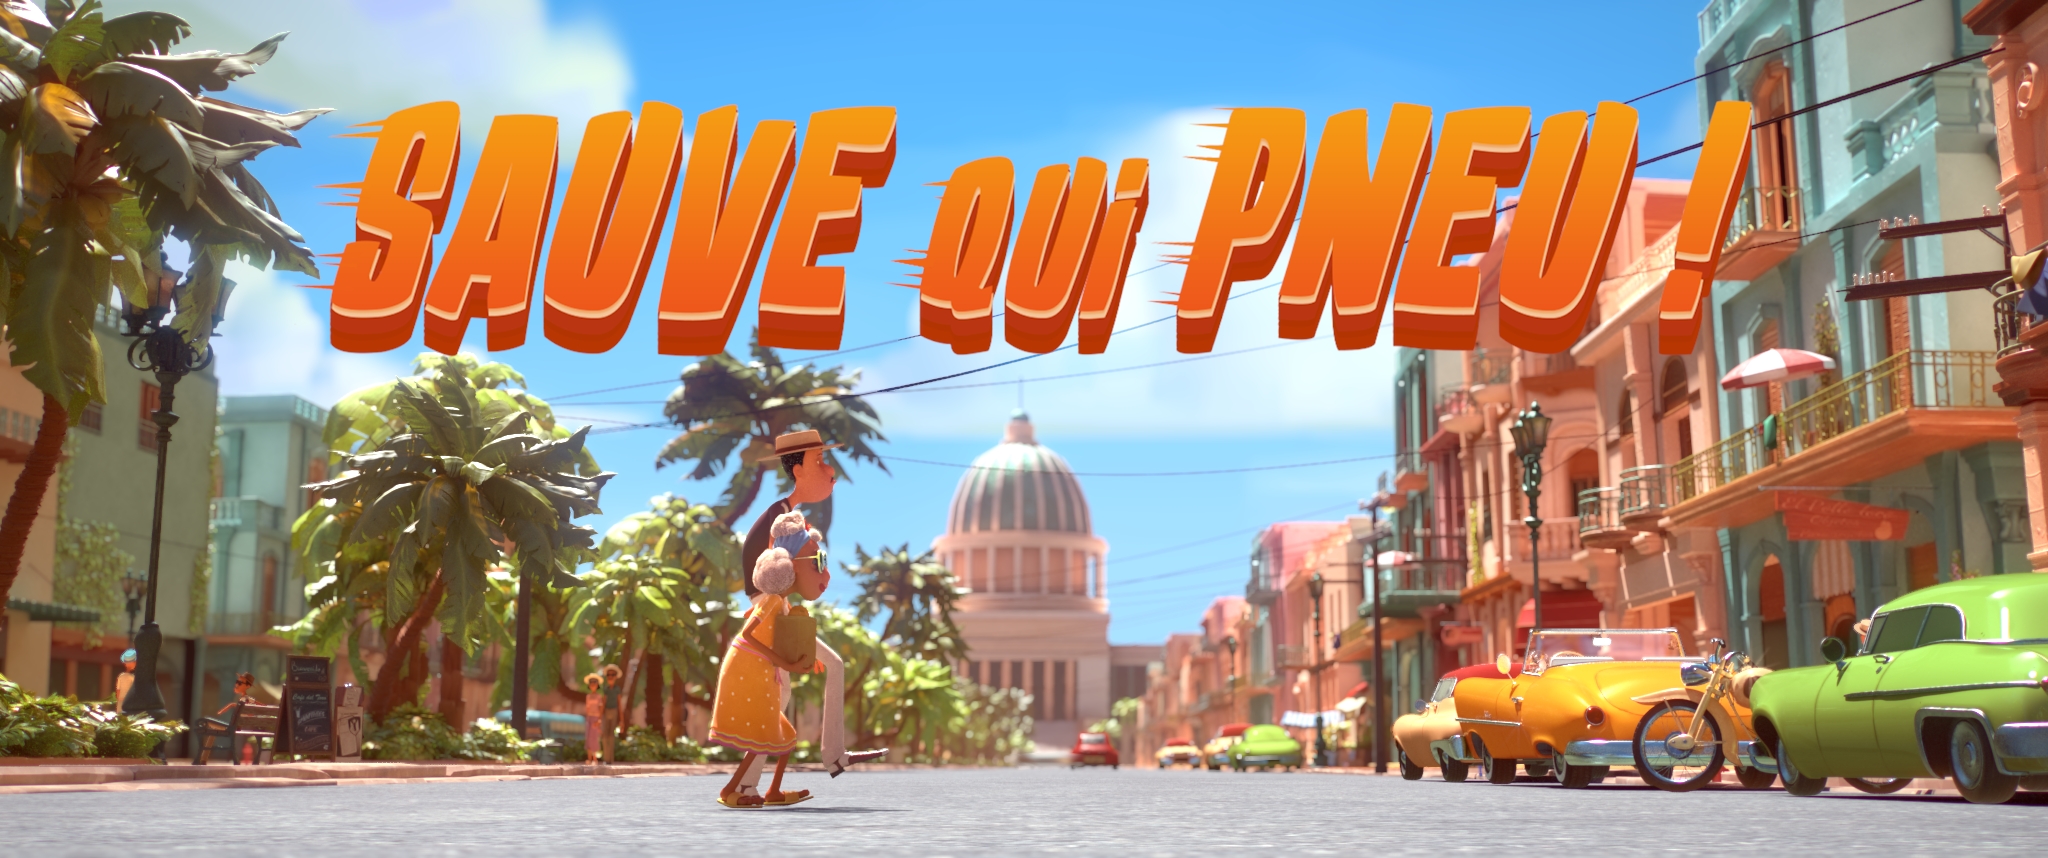 フランスのステューデントチームによるアニメーション『逃げろ！』。キューバを舞台にしたカラフルで楽しい作品。
